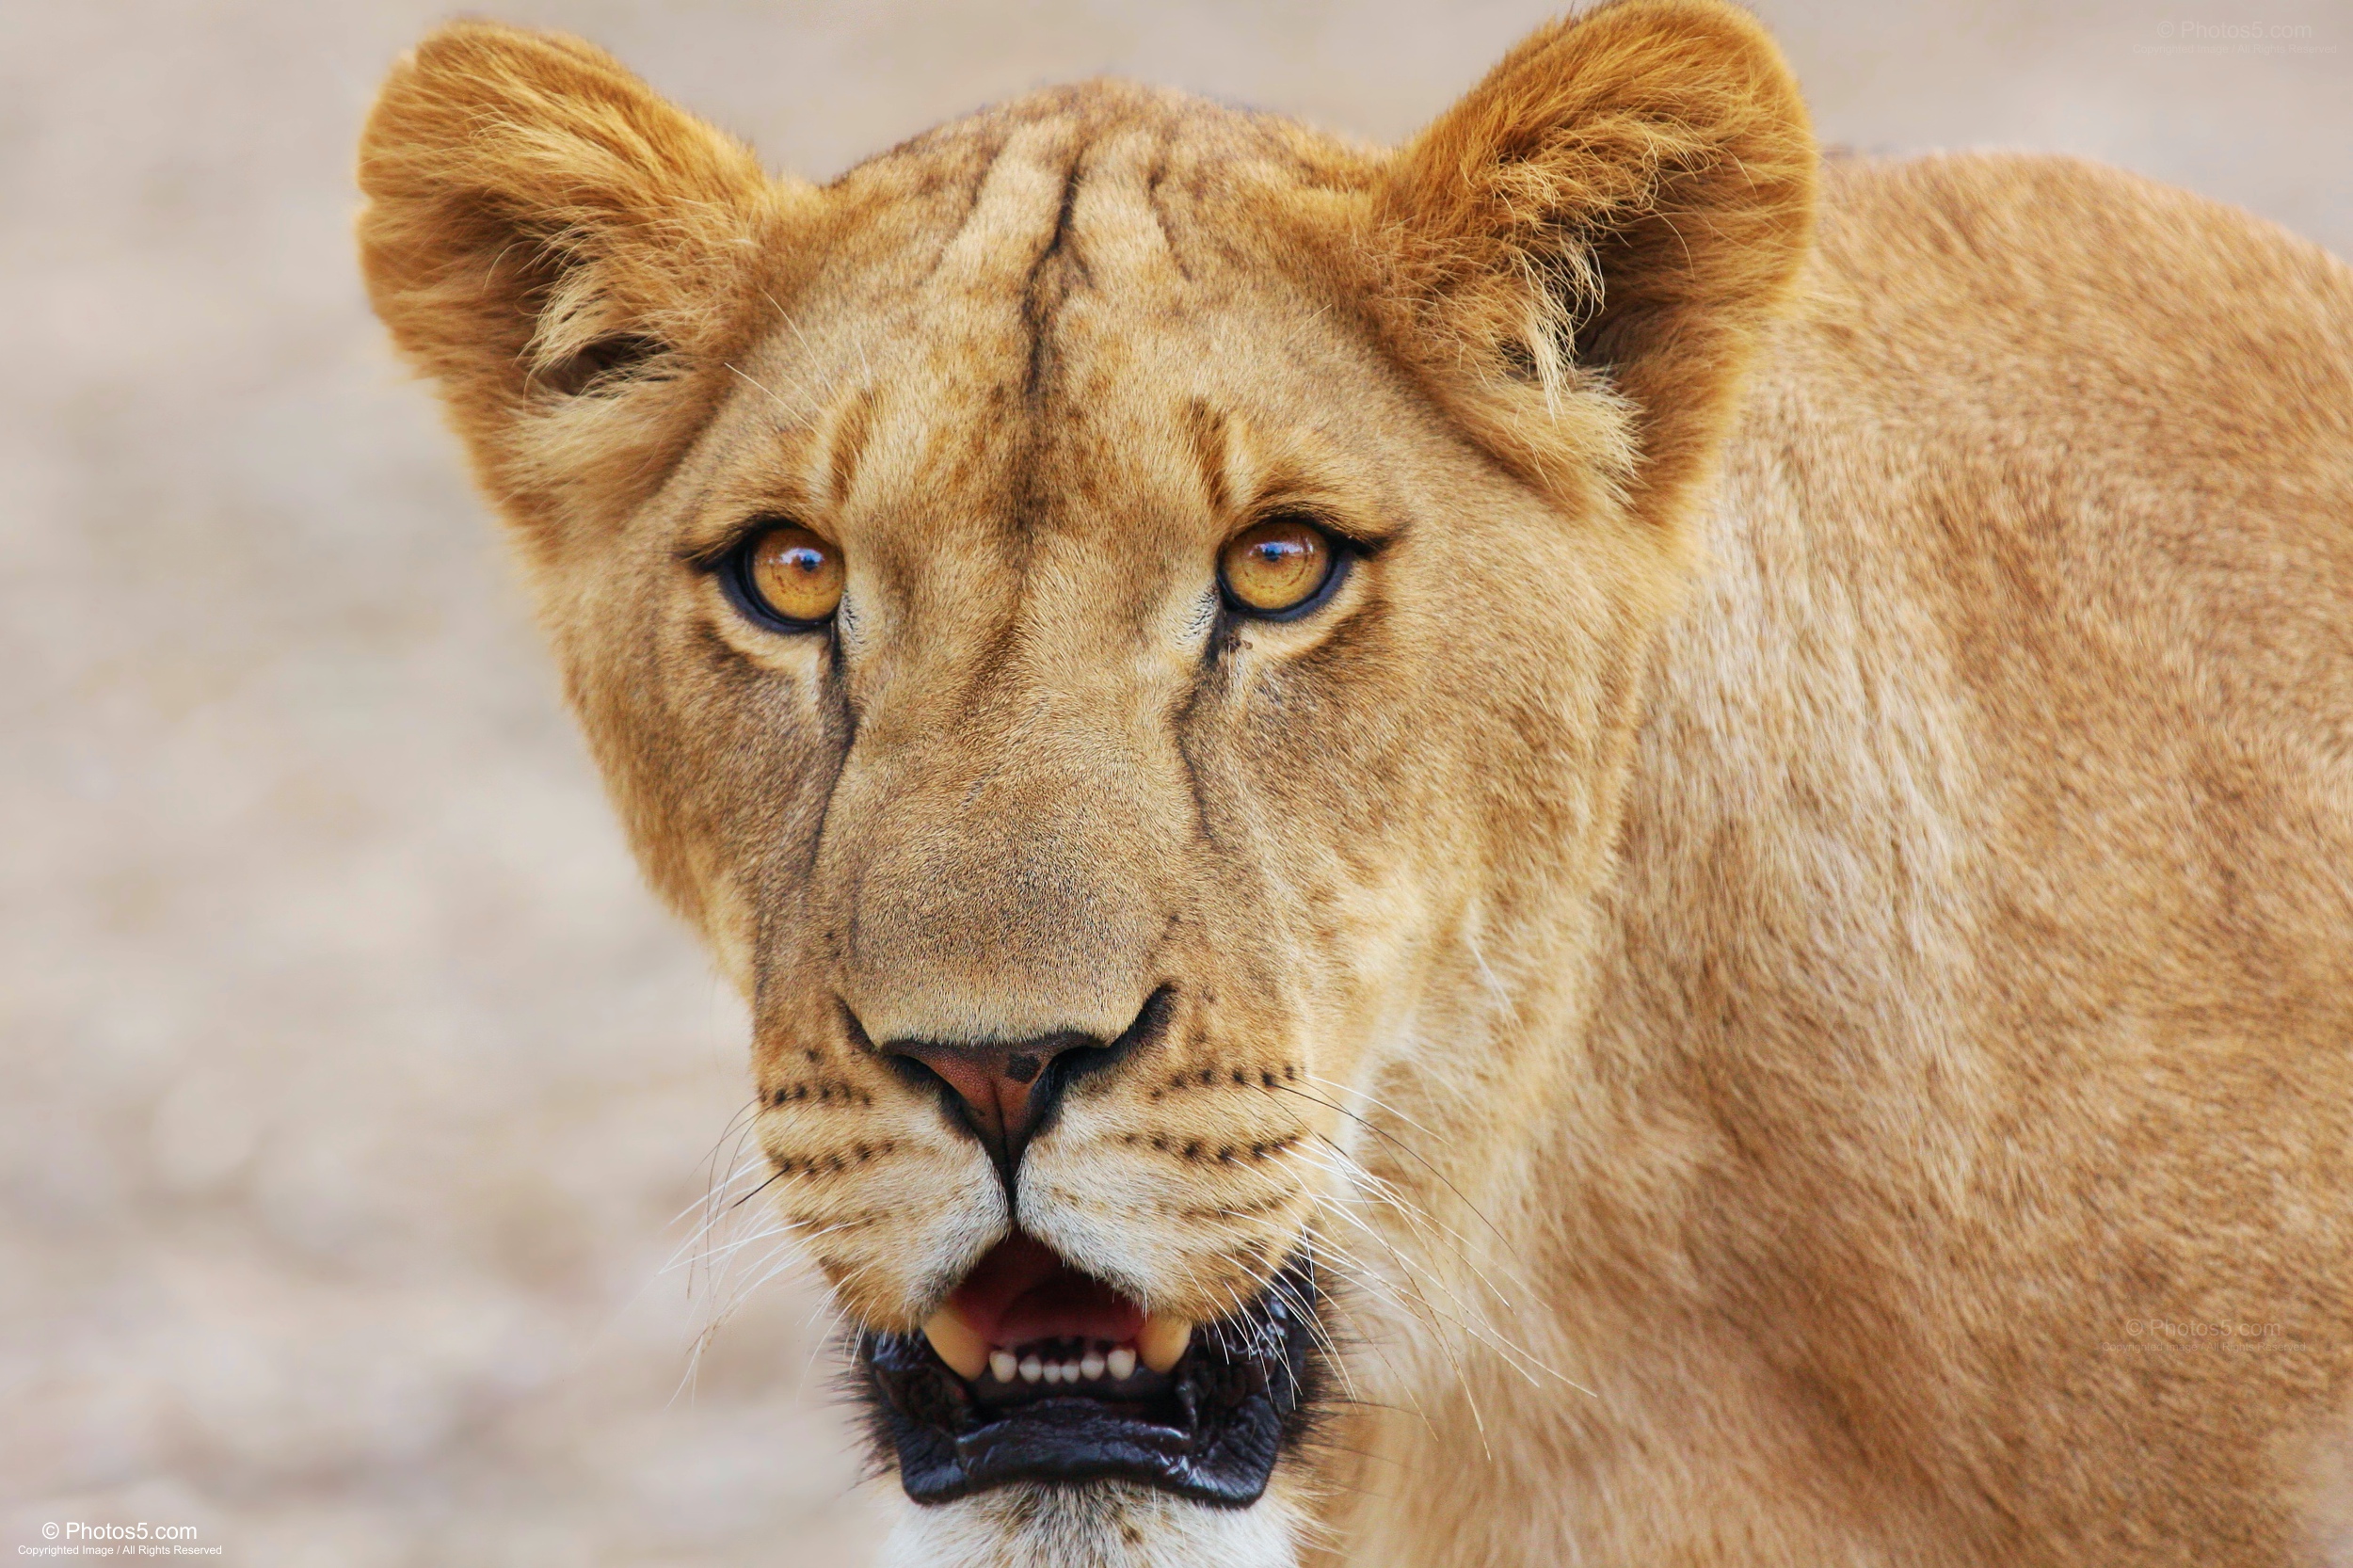 Portrait of Wild Lioness – Photos5.com